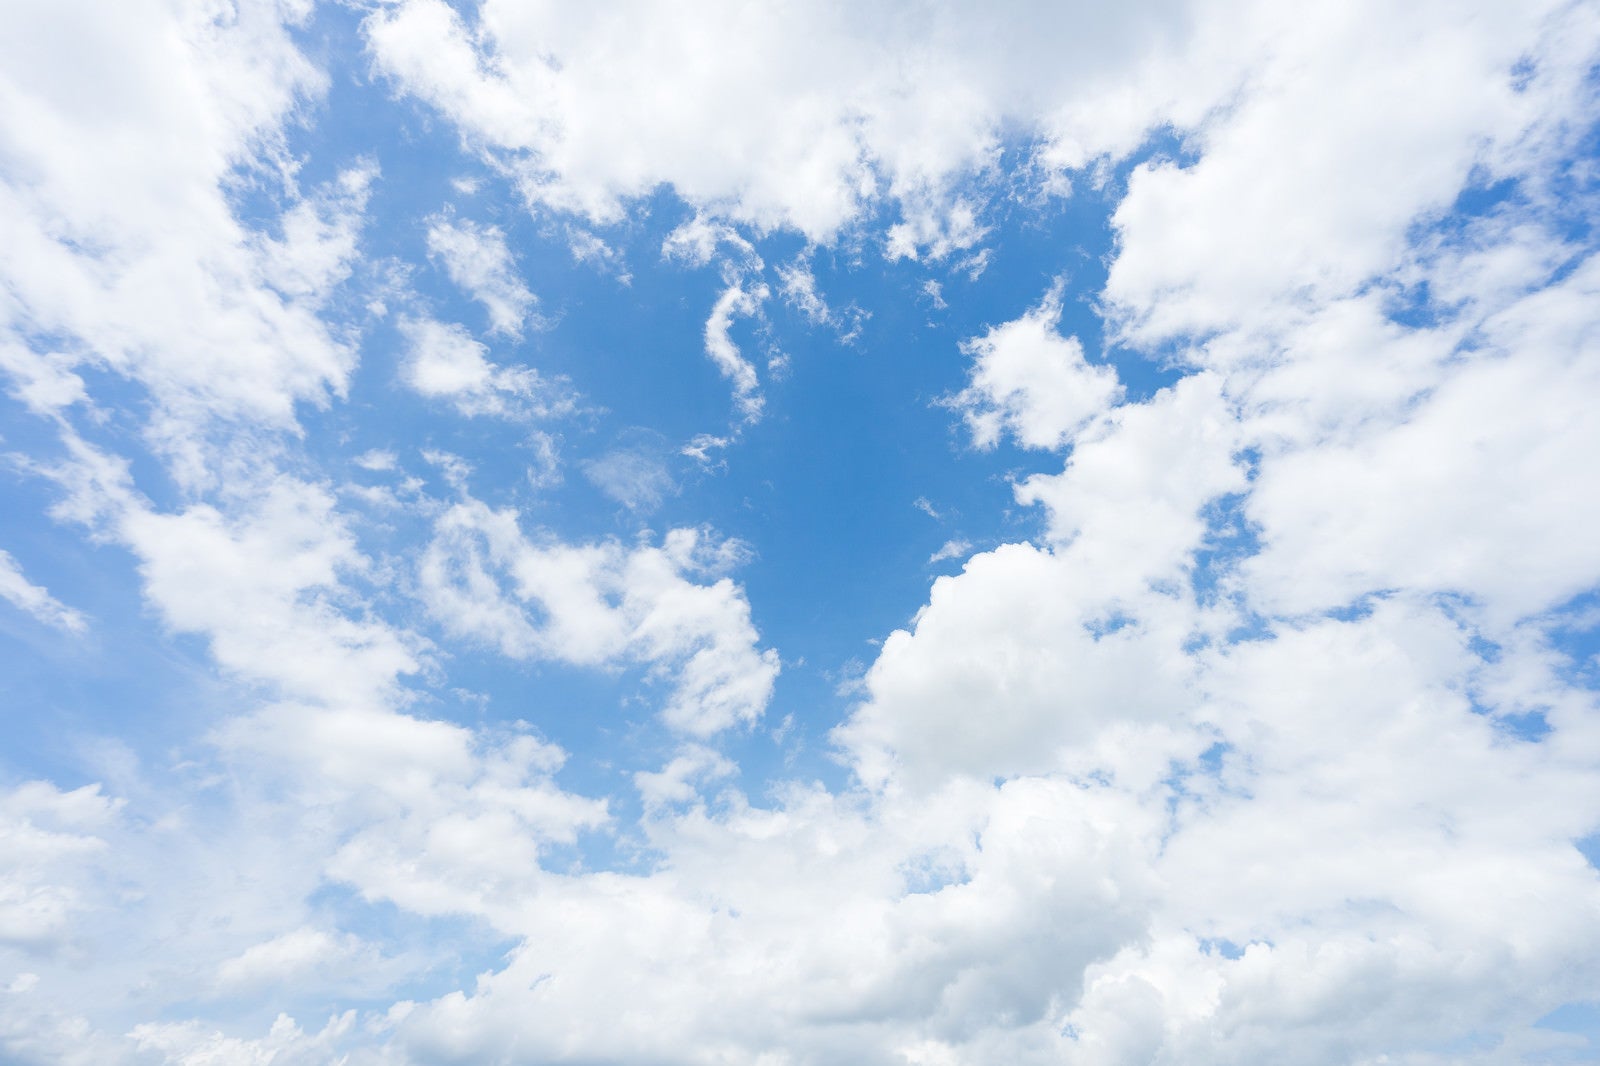 「青空と雲空」の写真